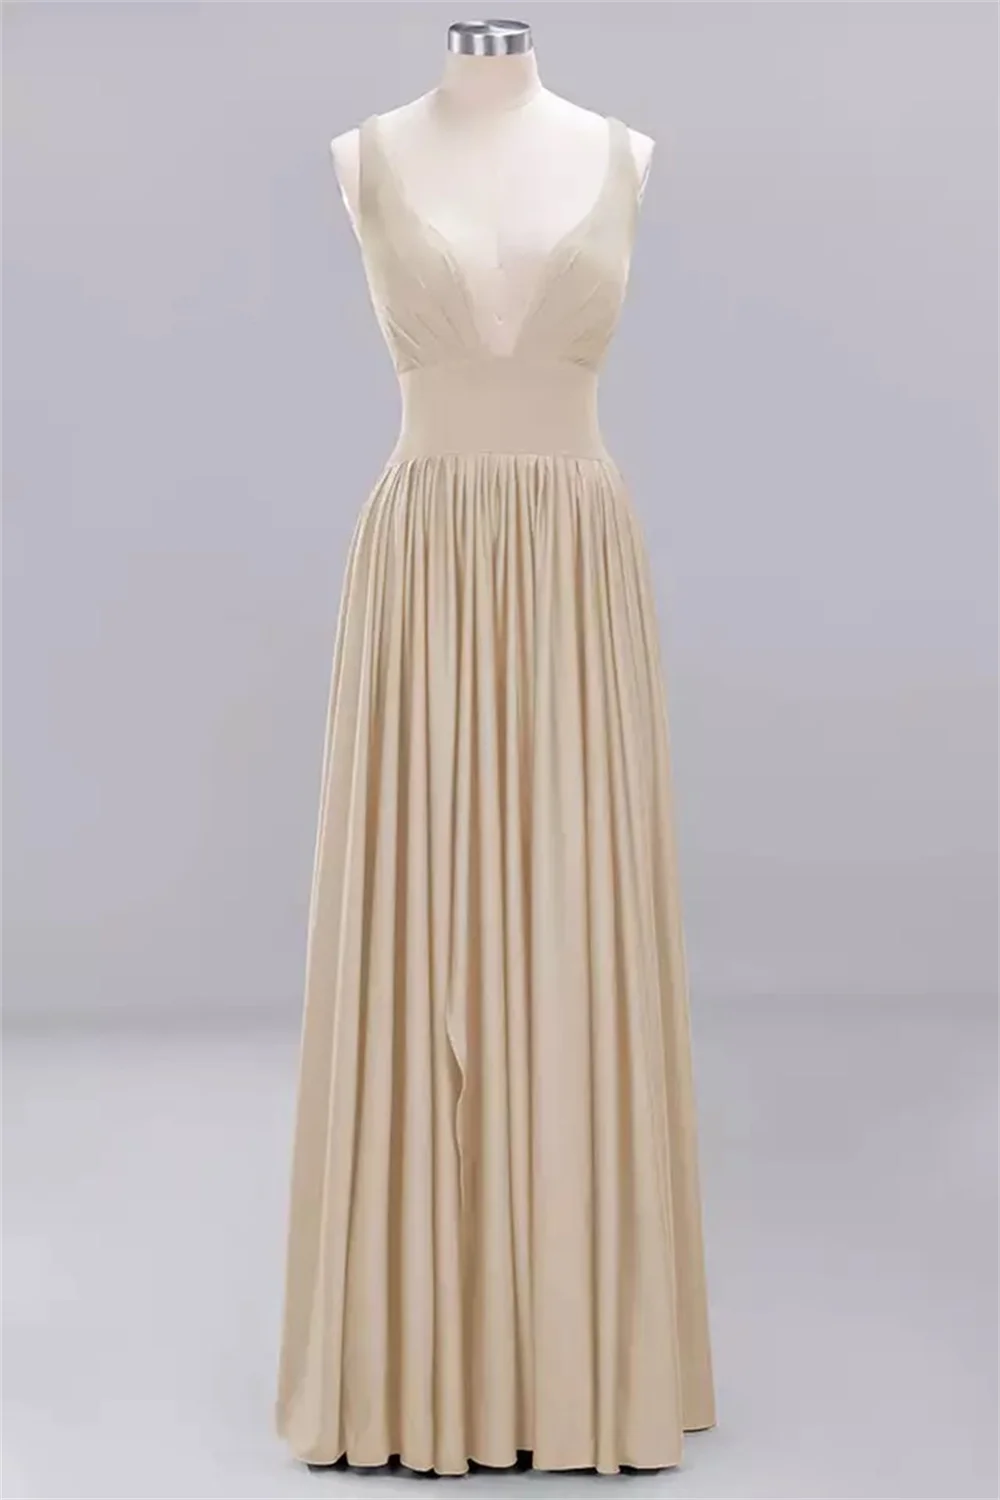 Женское платье из эластичной ткани с круглым вырезом - Фото №1